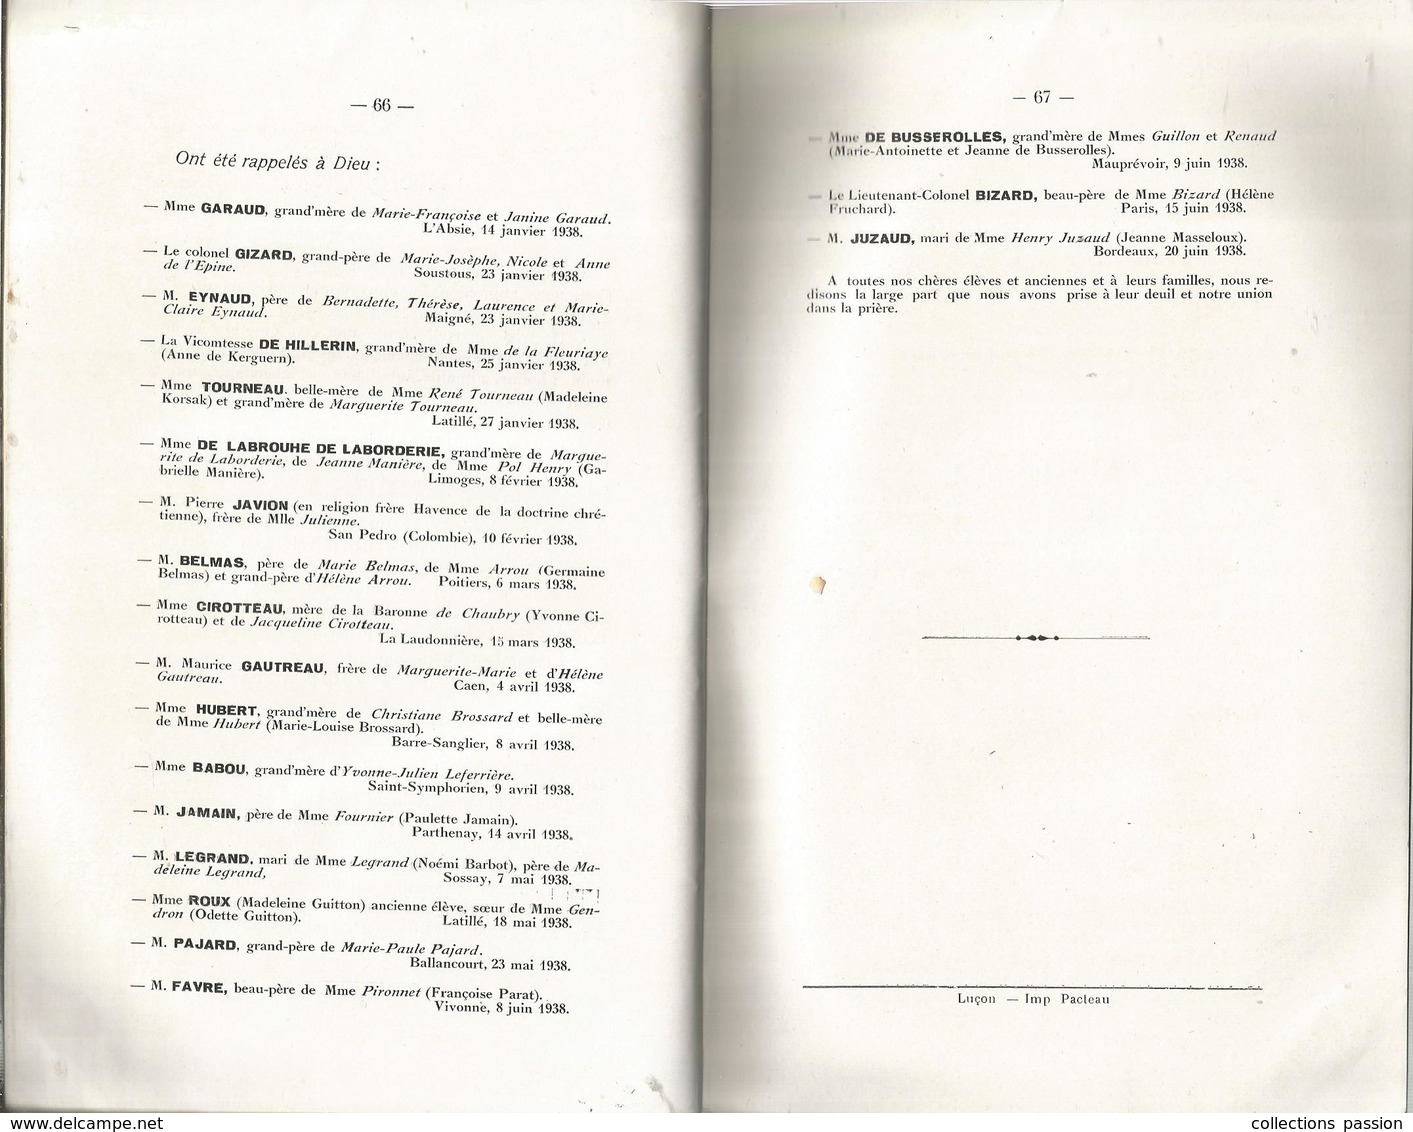 Régionalisme,Poitou-Charente,ECHO DU DOYENNE ST HILAIRE , Poitiers,1938, 67 Pages , 5 Scans, Frais Fr 4.85 E - Poitou-Charentes